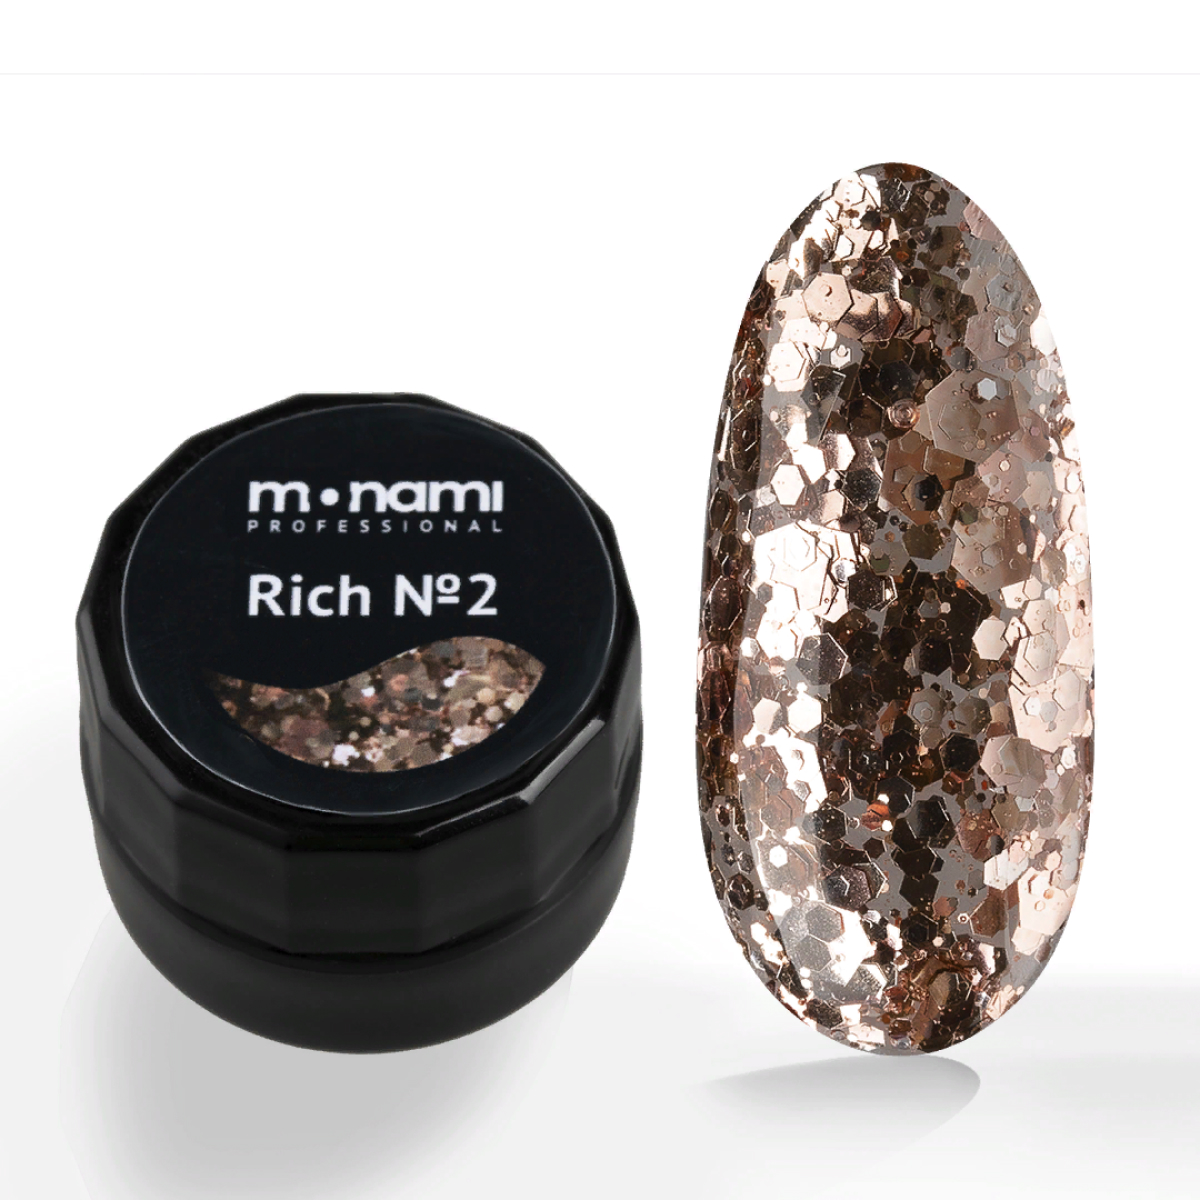 Гель-лак для ногтей Monami Rich с бронзовыми блестками разного размера №2, 5 мл